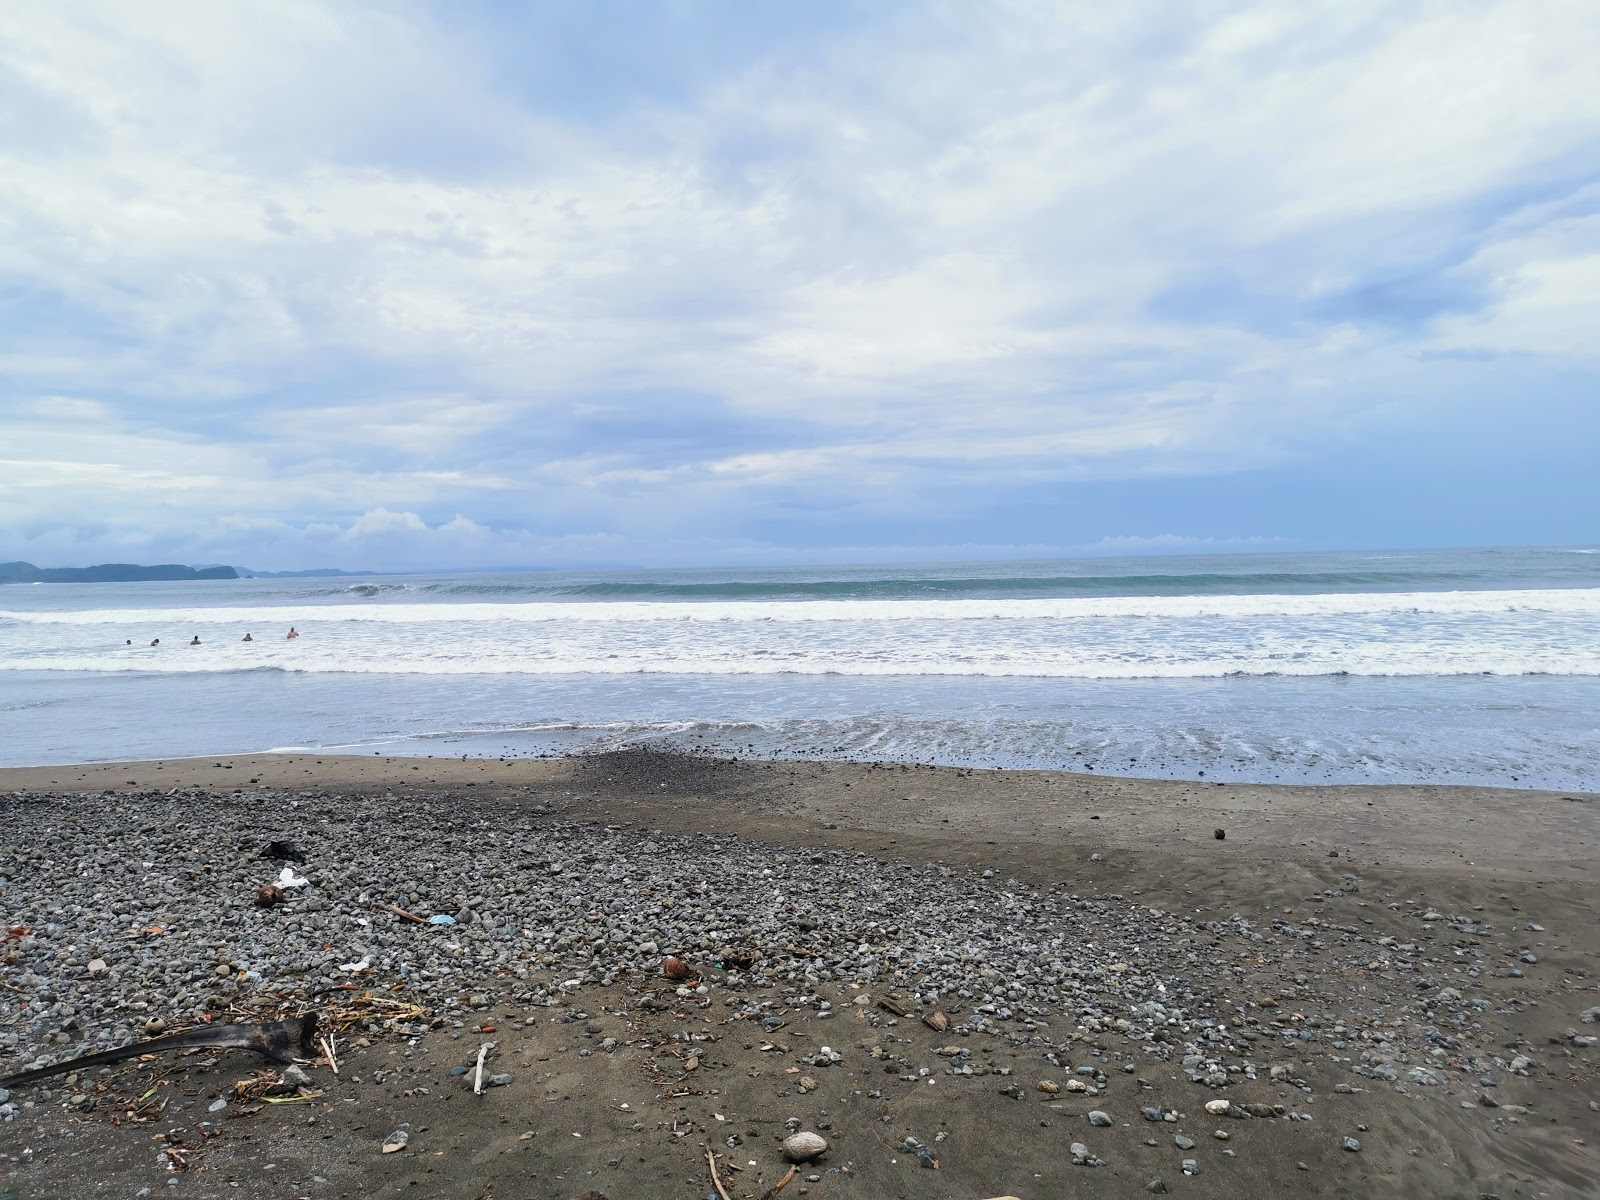 Zdjęcie Islita Beach - popularne miejsce wśród znawców relaksu